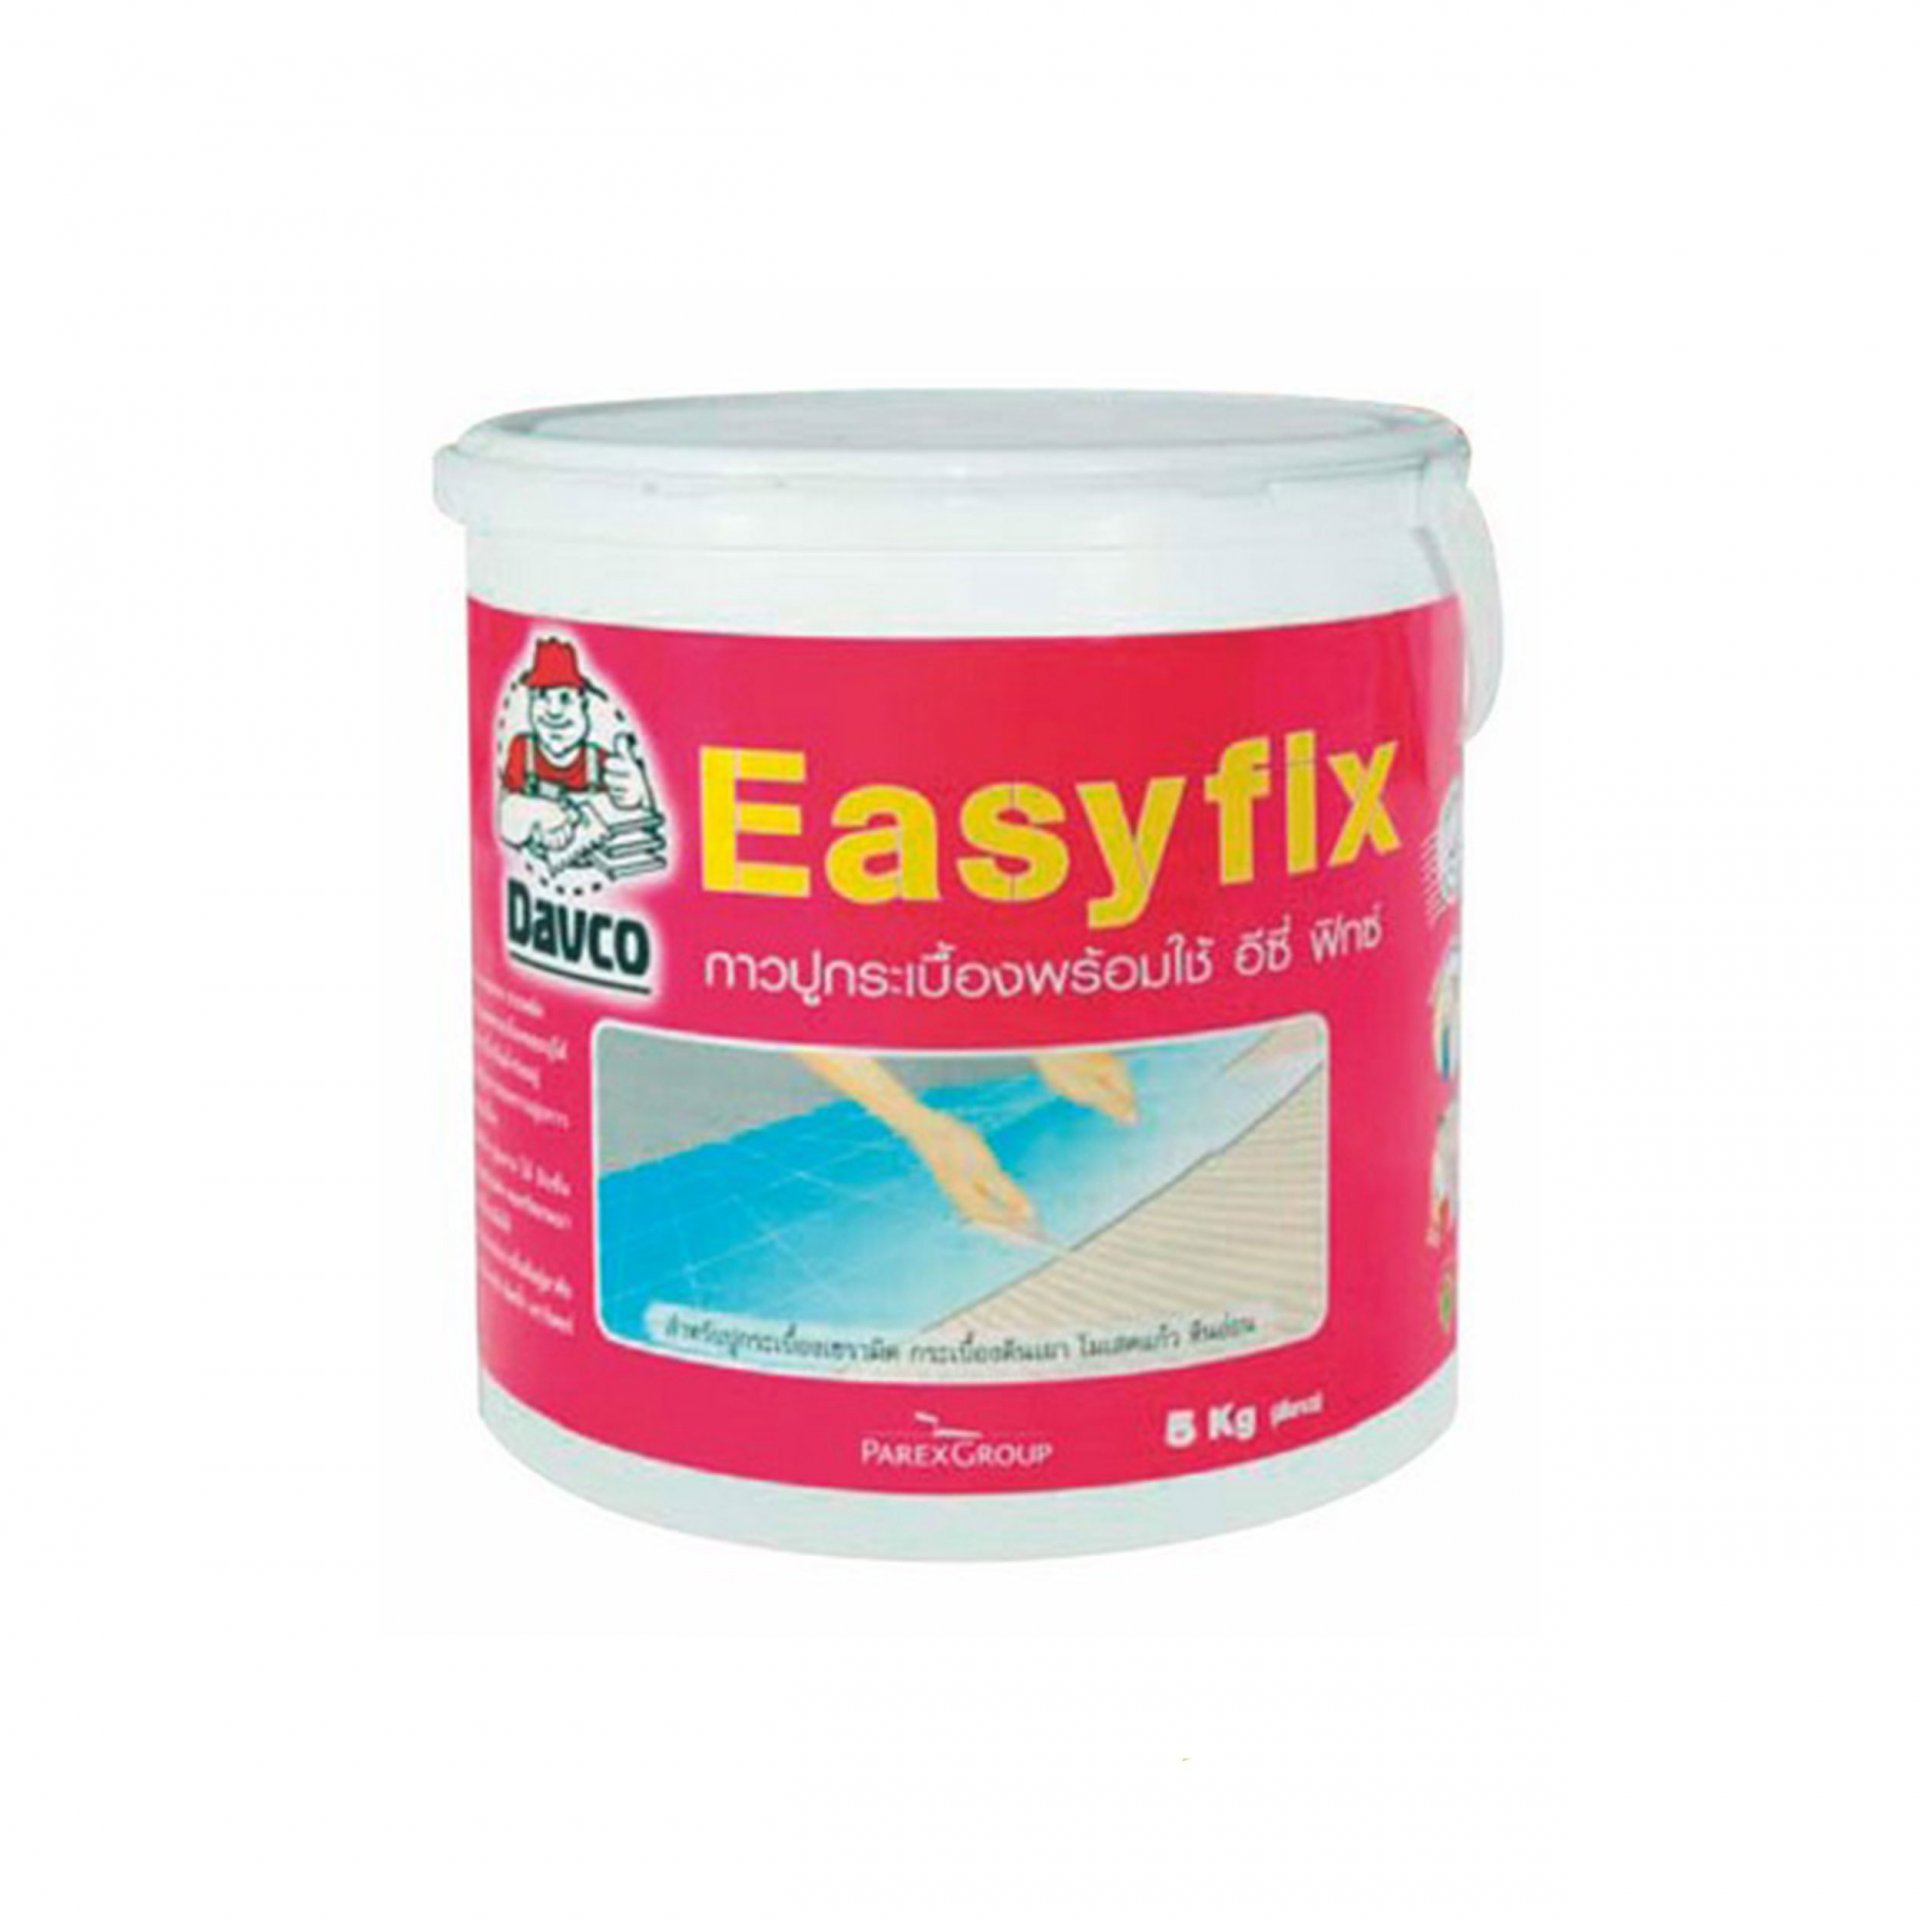 Davco EasyFix, 5 kg/pail